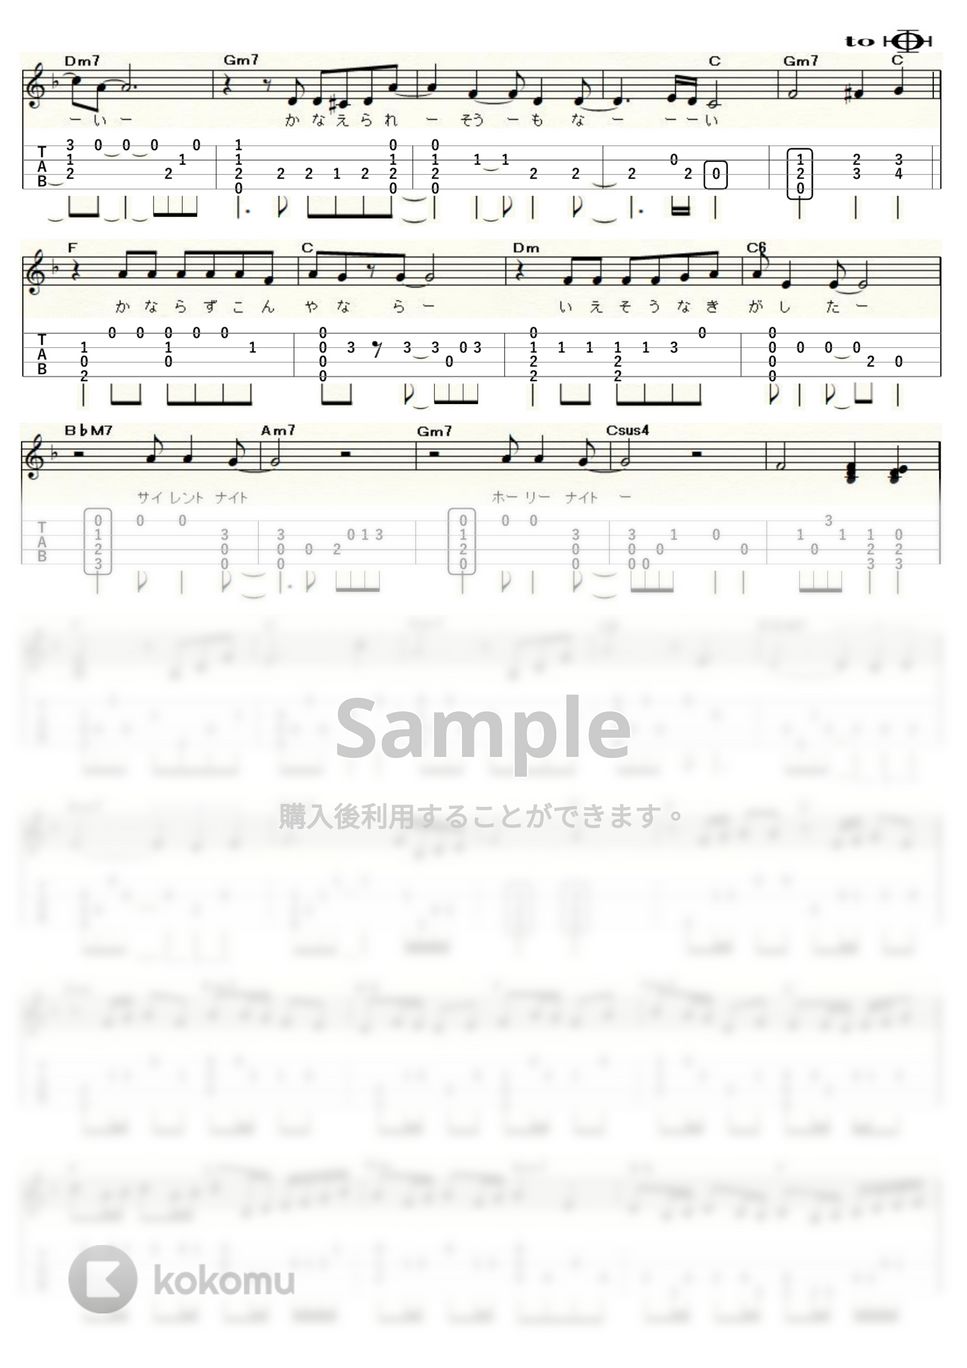 山下達郎 - クリスマス・イブ (ｳｸﾚﾚｿﾛ / Low-G / 中級) by ukulelepapa